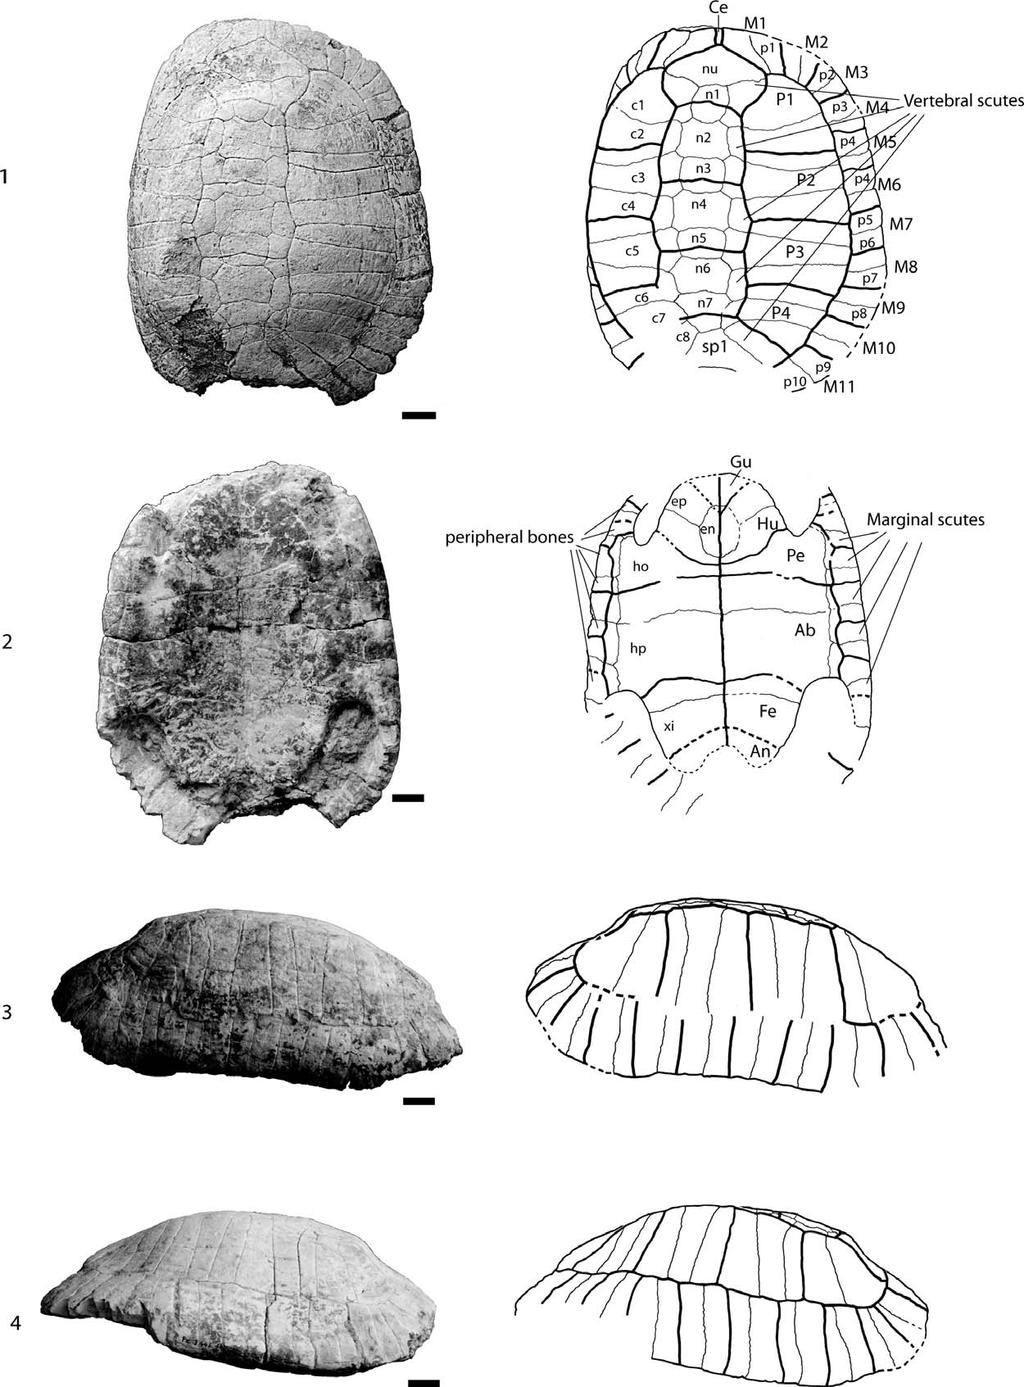 952 JOURNAL OF PALEONTOLOGY, V. 88, NO. 5, 2014 FIGURE 2 FFSM 3446.1, Testudo antiqua, middle Miocene of Hohenhöwen, Germany.